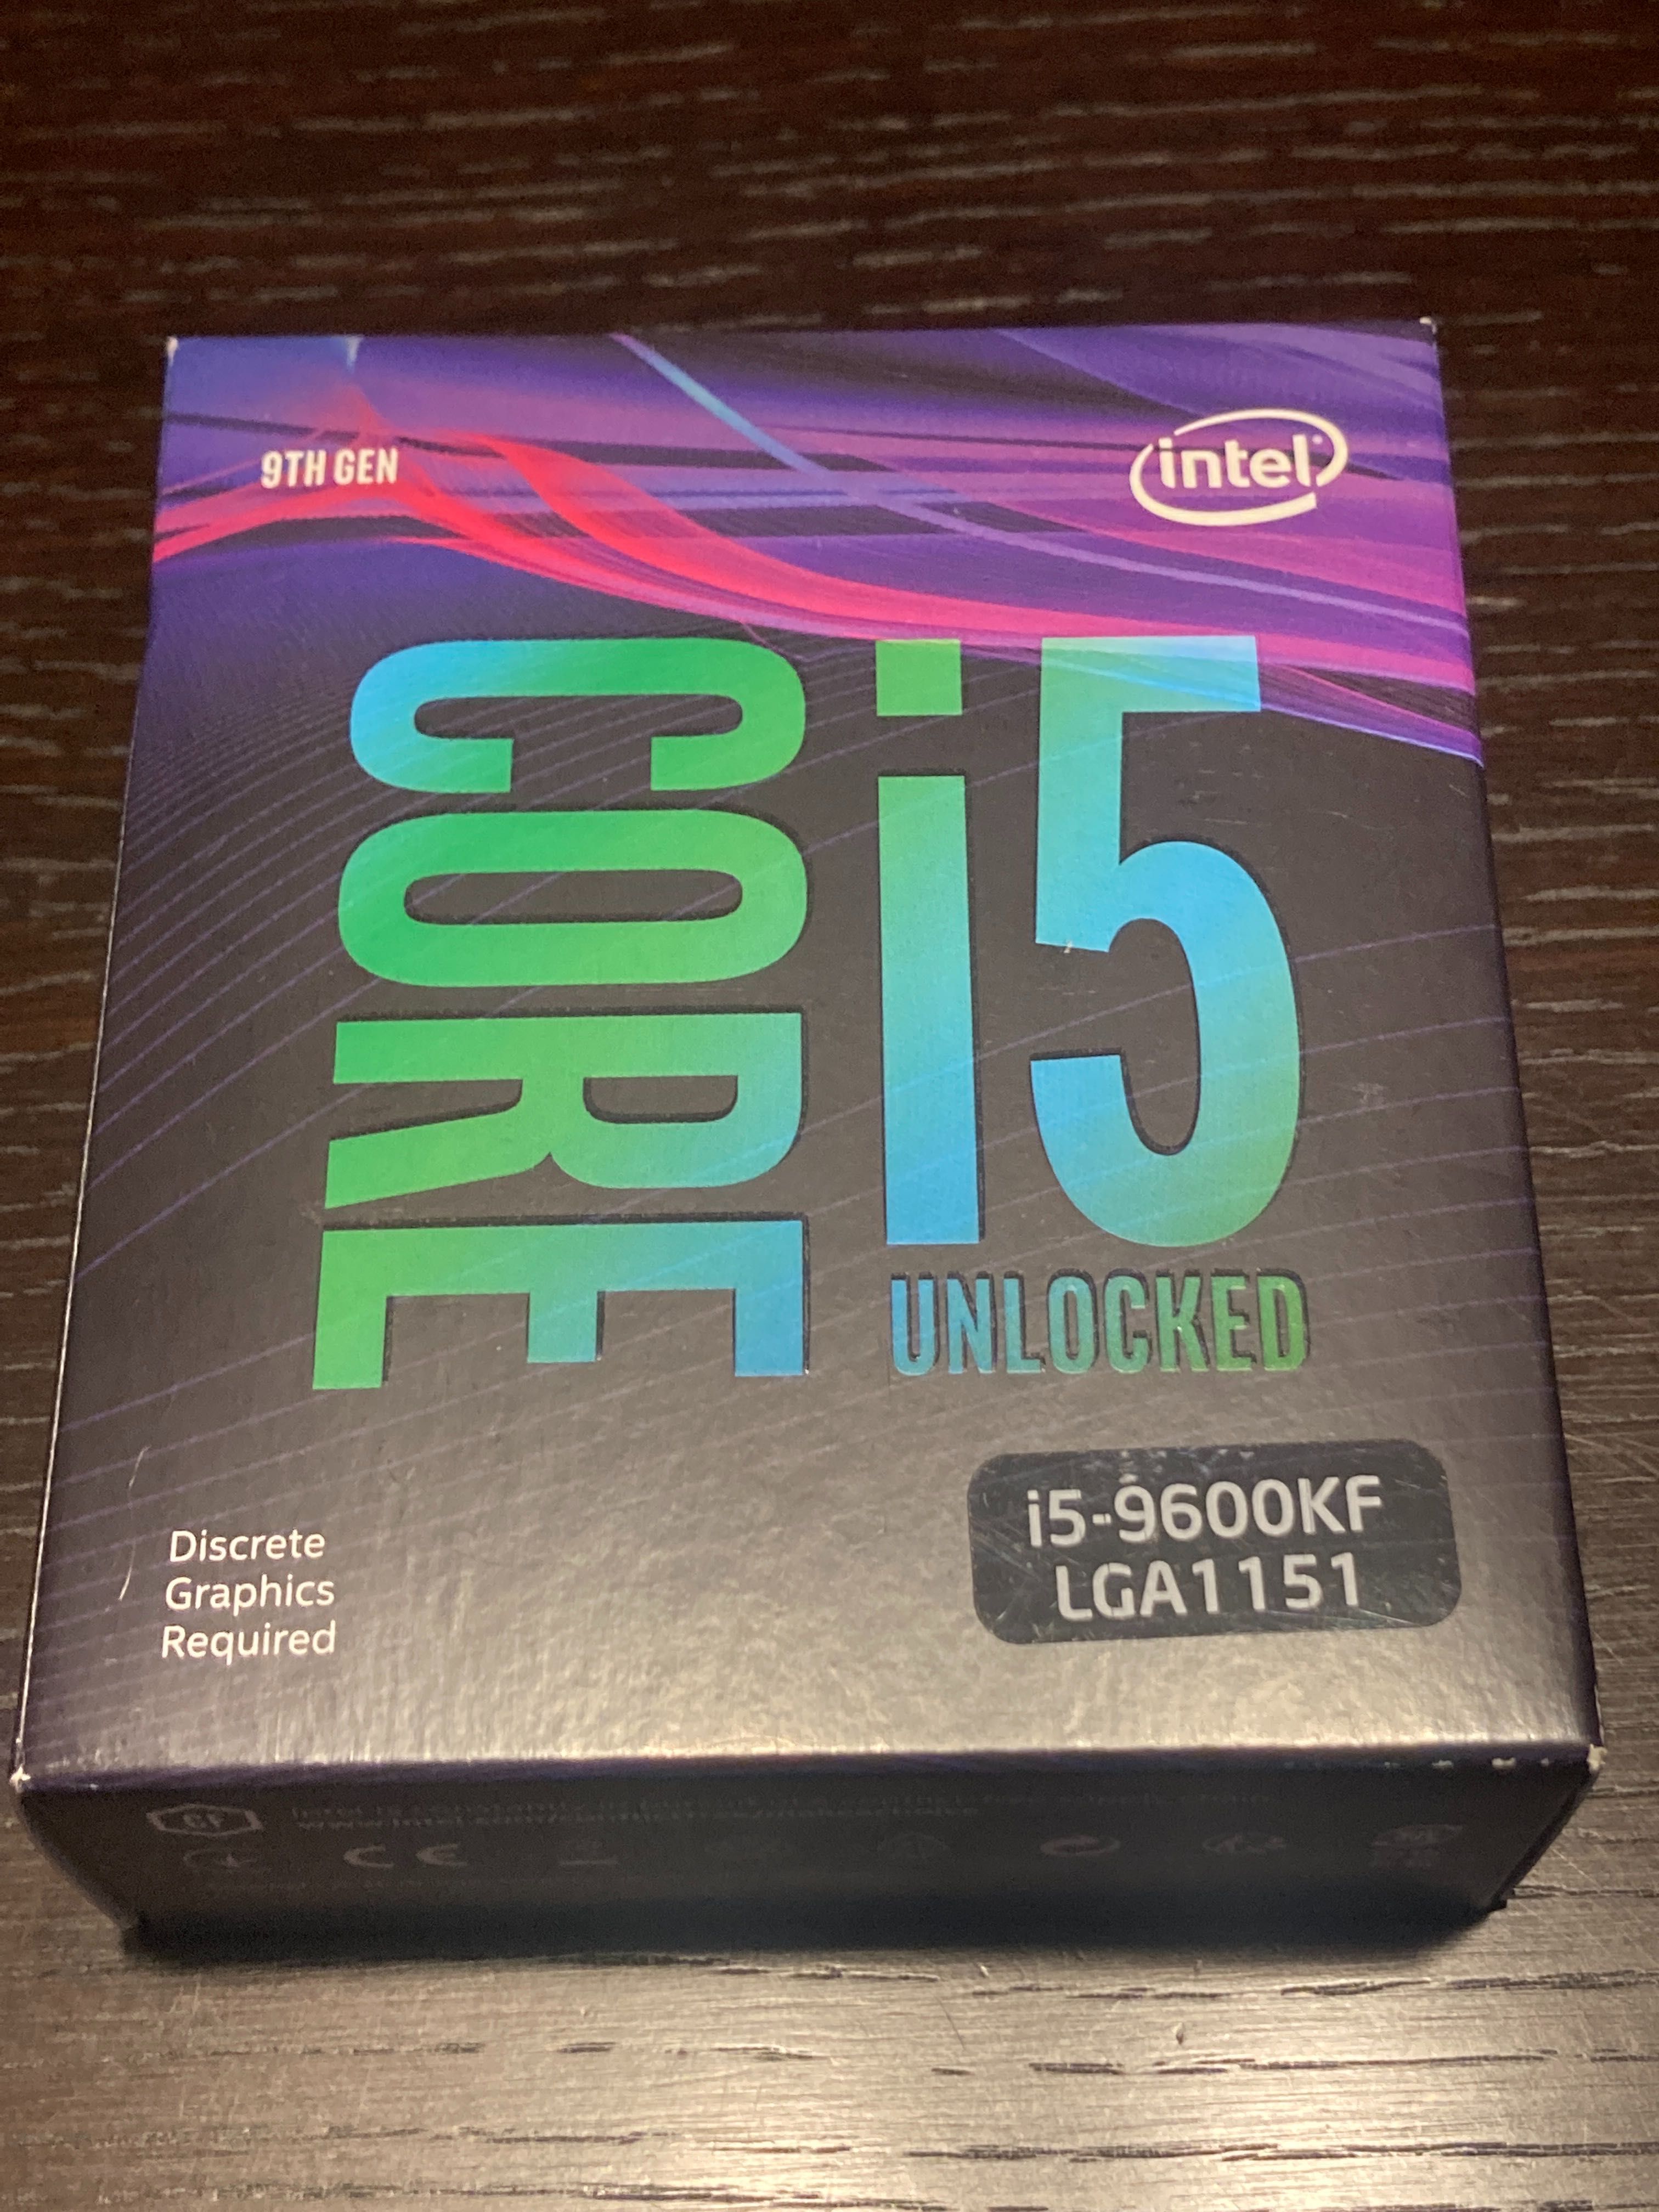 Intel core i5-9600KF unlocked